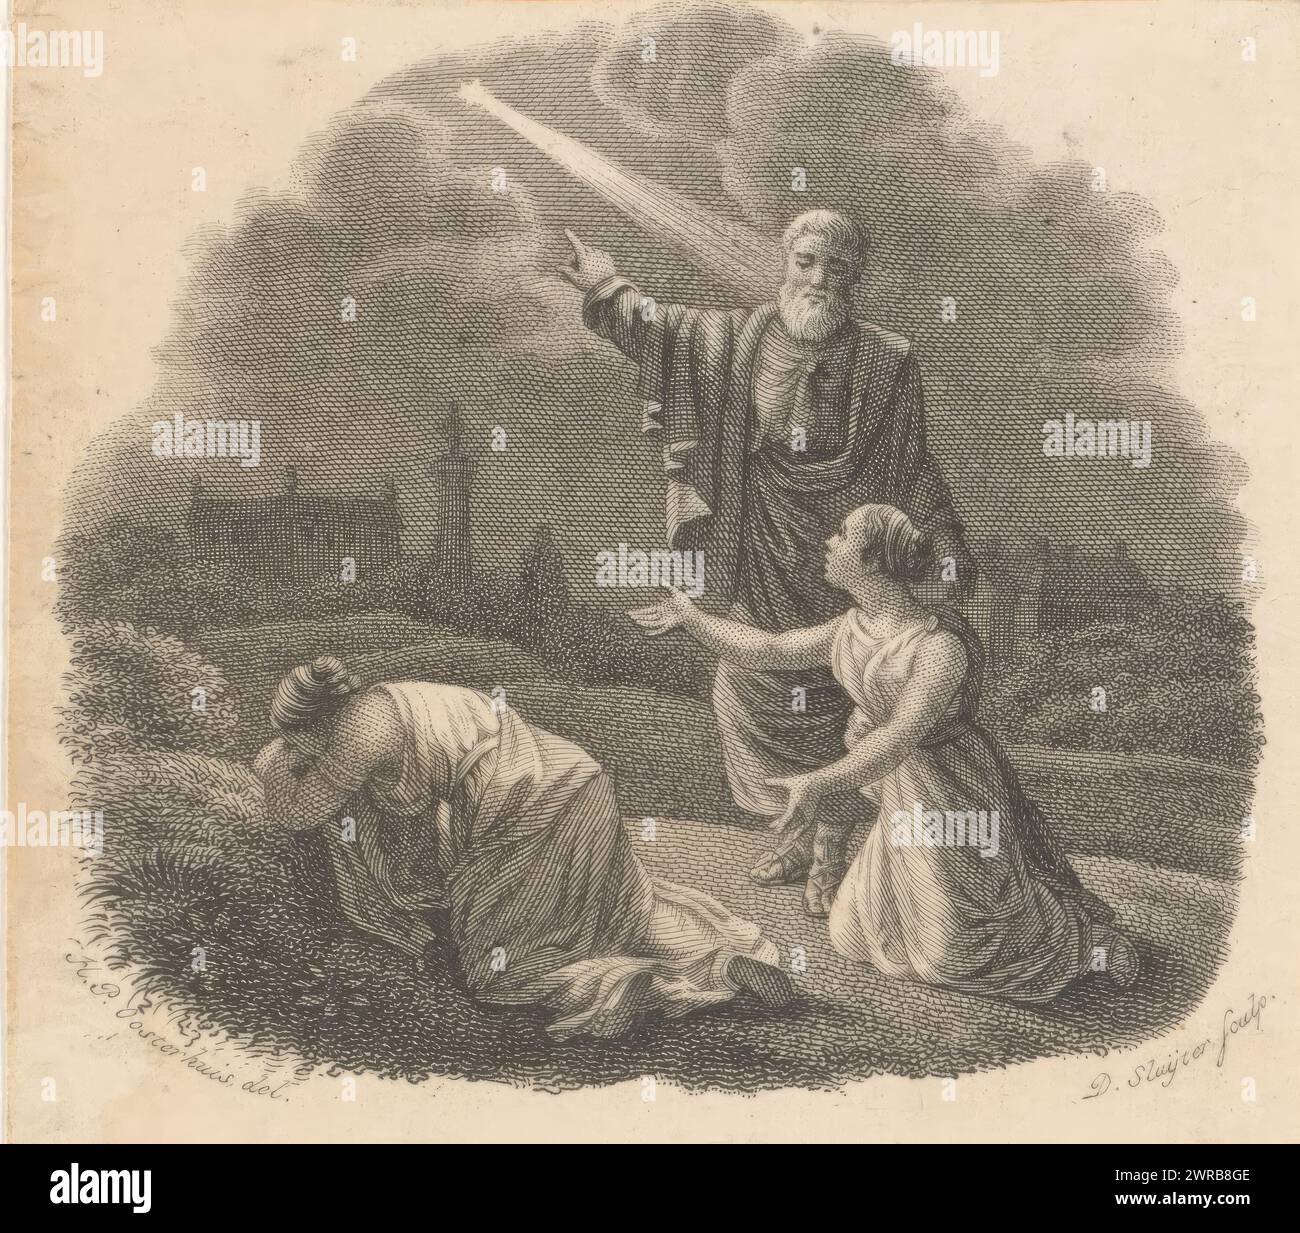 Mann weist zwei Frauen auf einen Stern, Printmacher: Dirk Sluyter, nach Zeichnung von: Haatje Pieters Oosterhuis, 1800 - 1852, Papier, Radierung, Gravur, Höhe 74 mm x Breite 83 mm, bedruckt Stockfoto